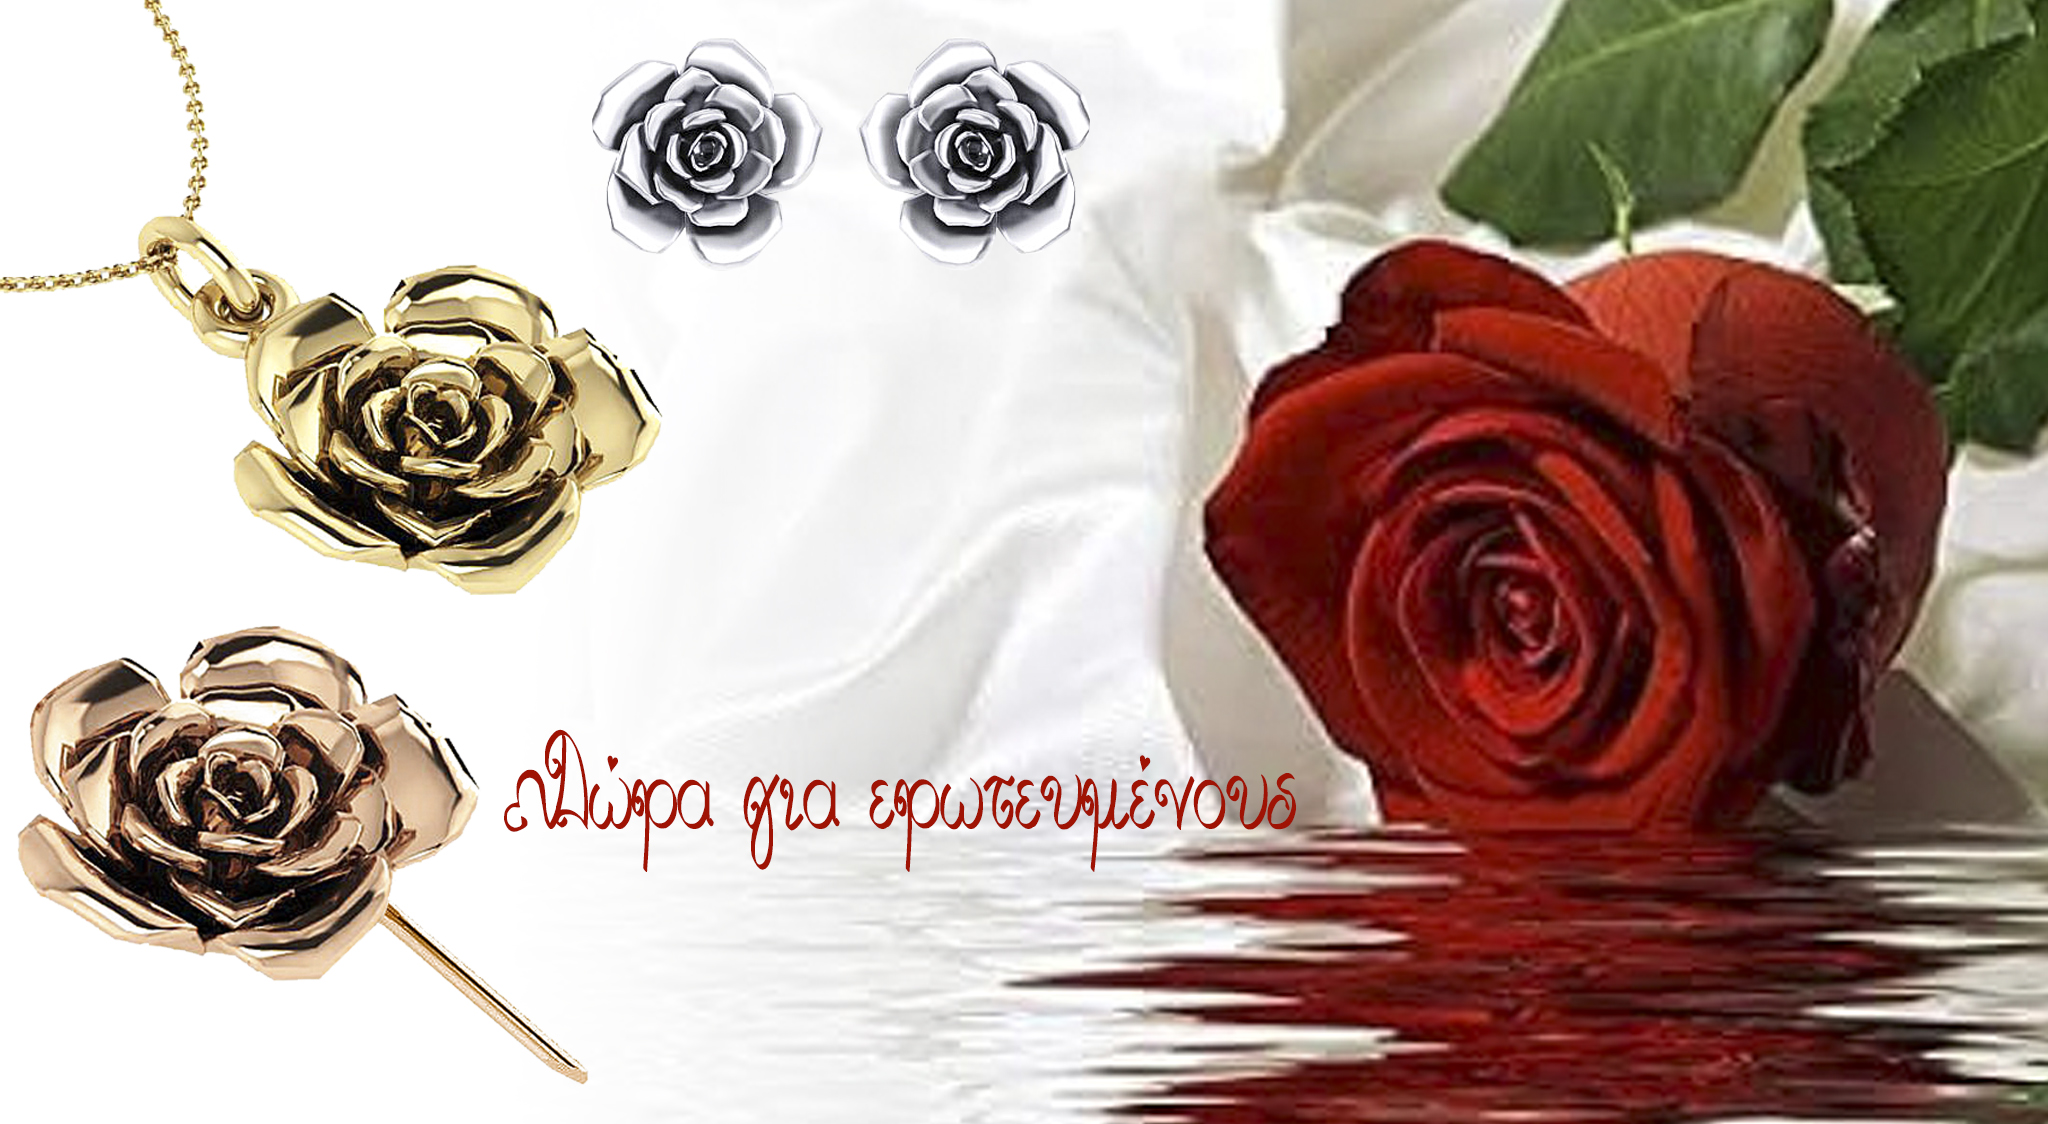 Κοσμήματα Τριαντάφυλλα - Συμβολικά Δώρα Αγάπης για Ερωτευμένους στην Γιορτή τού Αγίου Βαλεντίνου